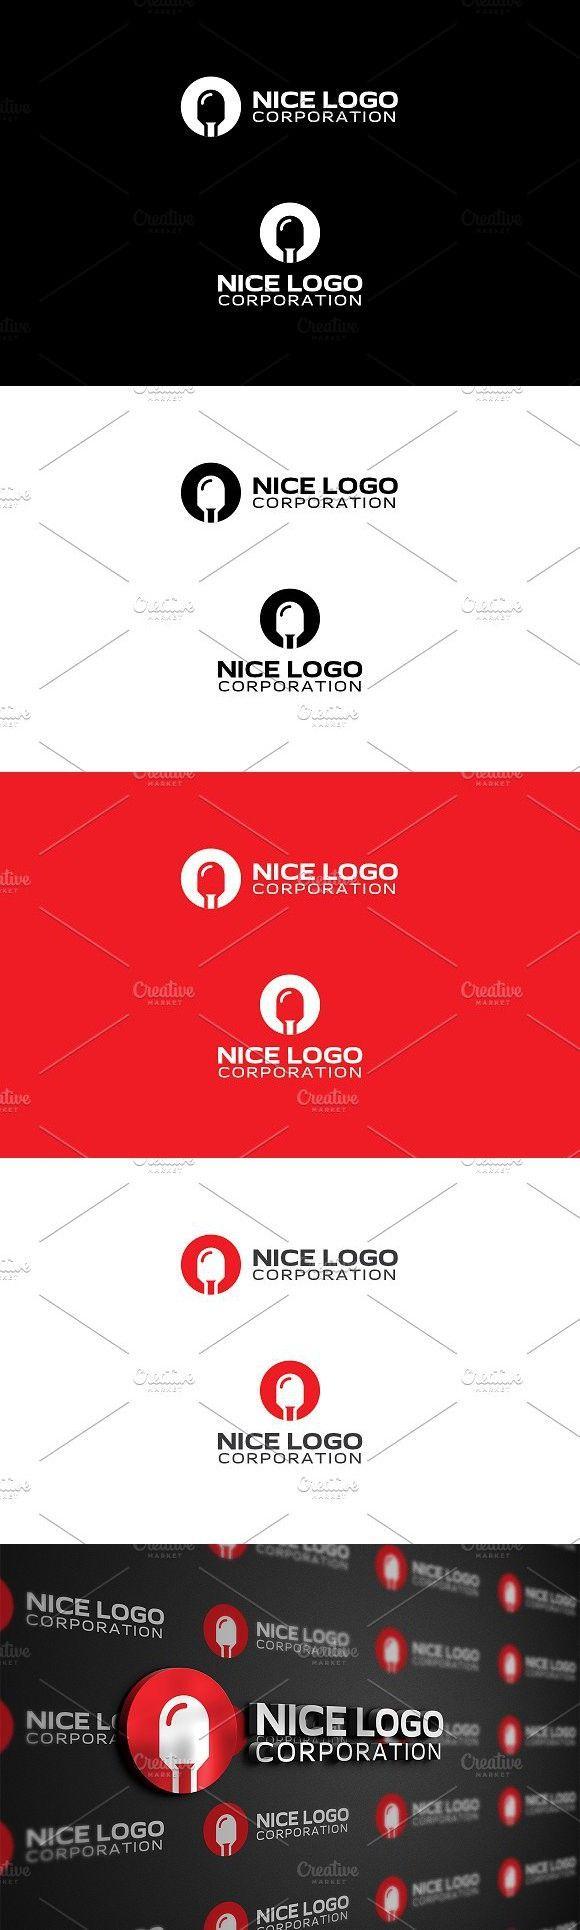 Diode Logo - diode logo | Logo Templates | Logos, Logo templates, Logos design